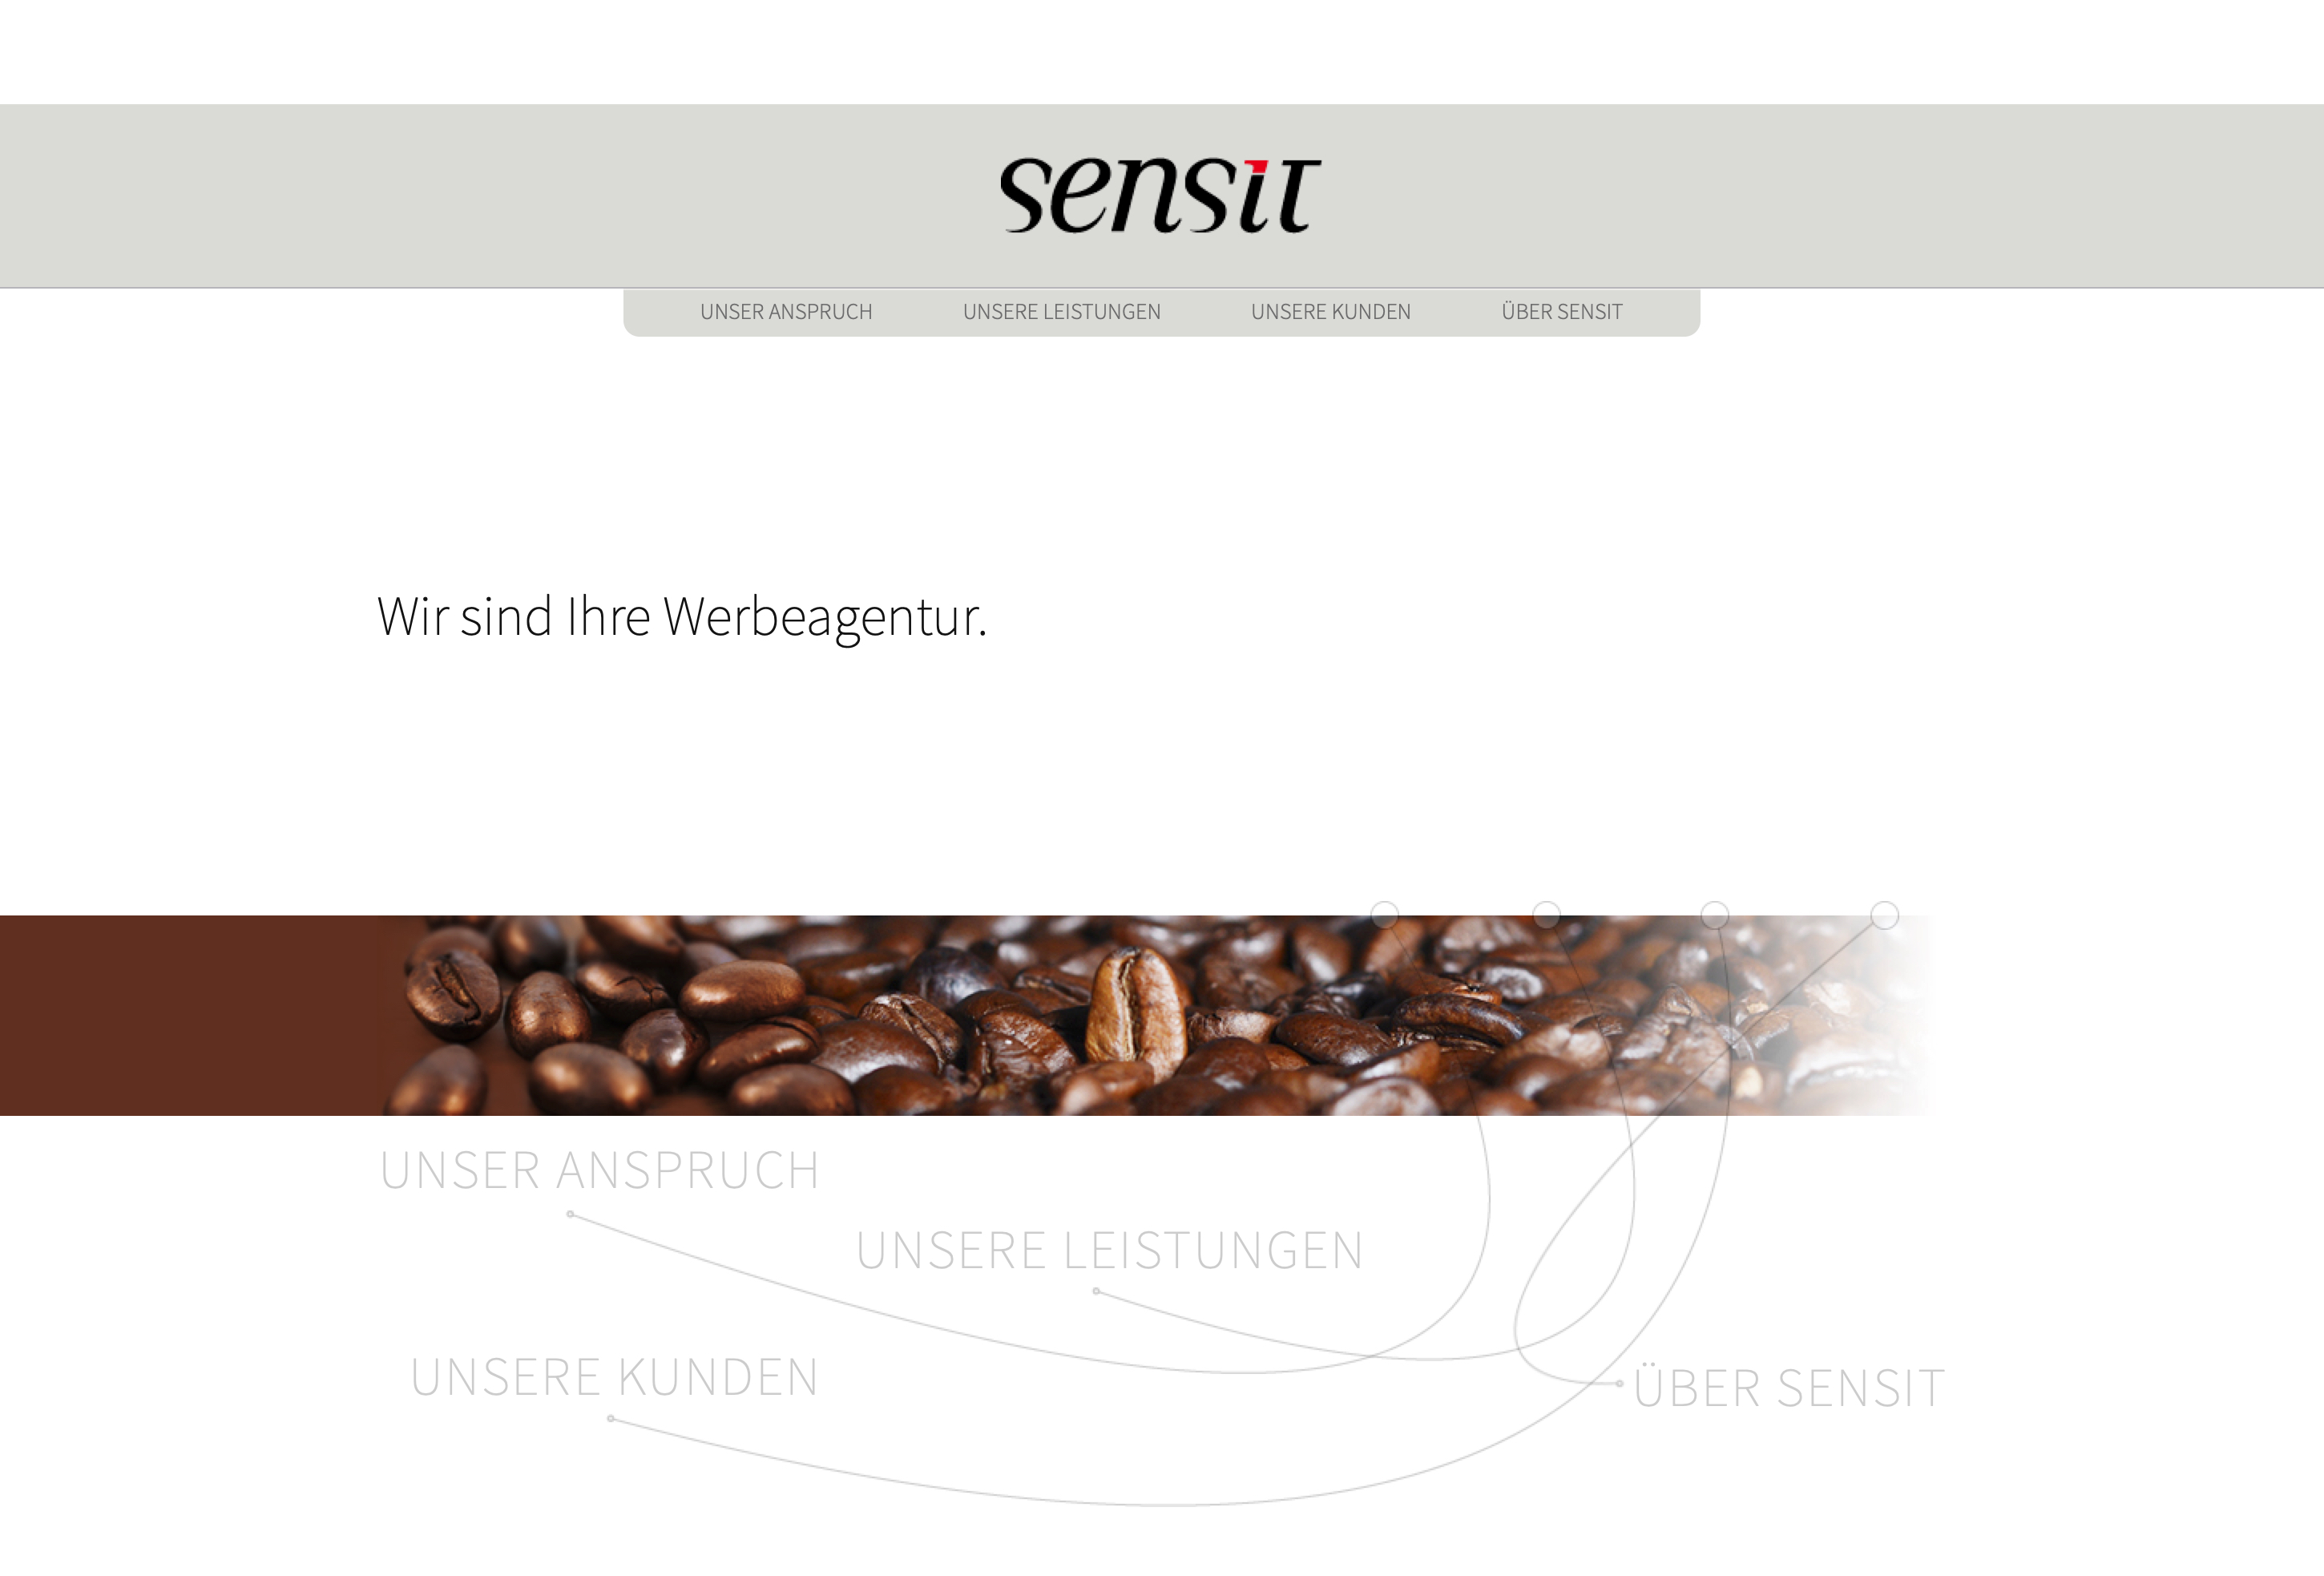 Sensit Communication GmbH